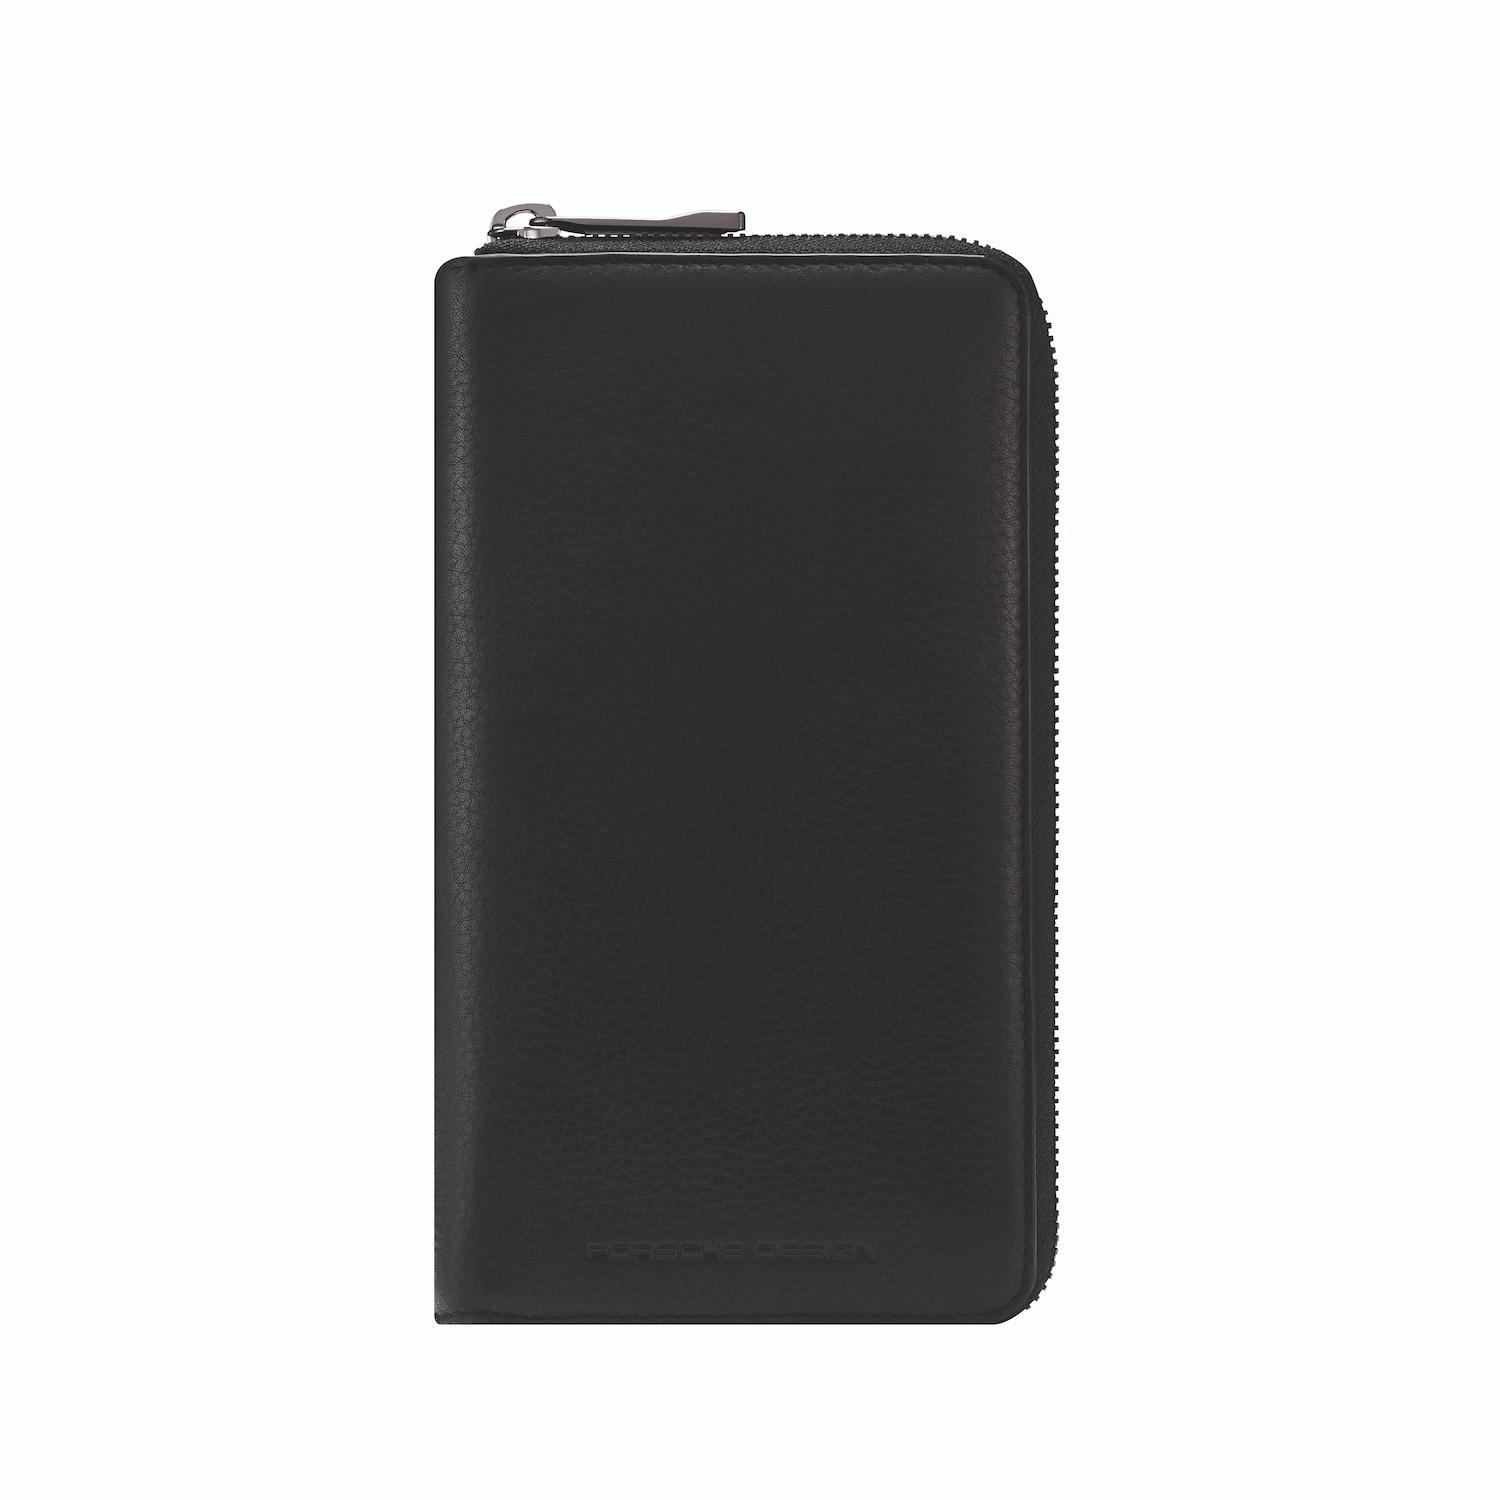 Pd Business Slg Wallet 15 CC zipper by Brics (Color: Black)